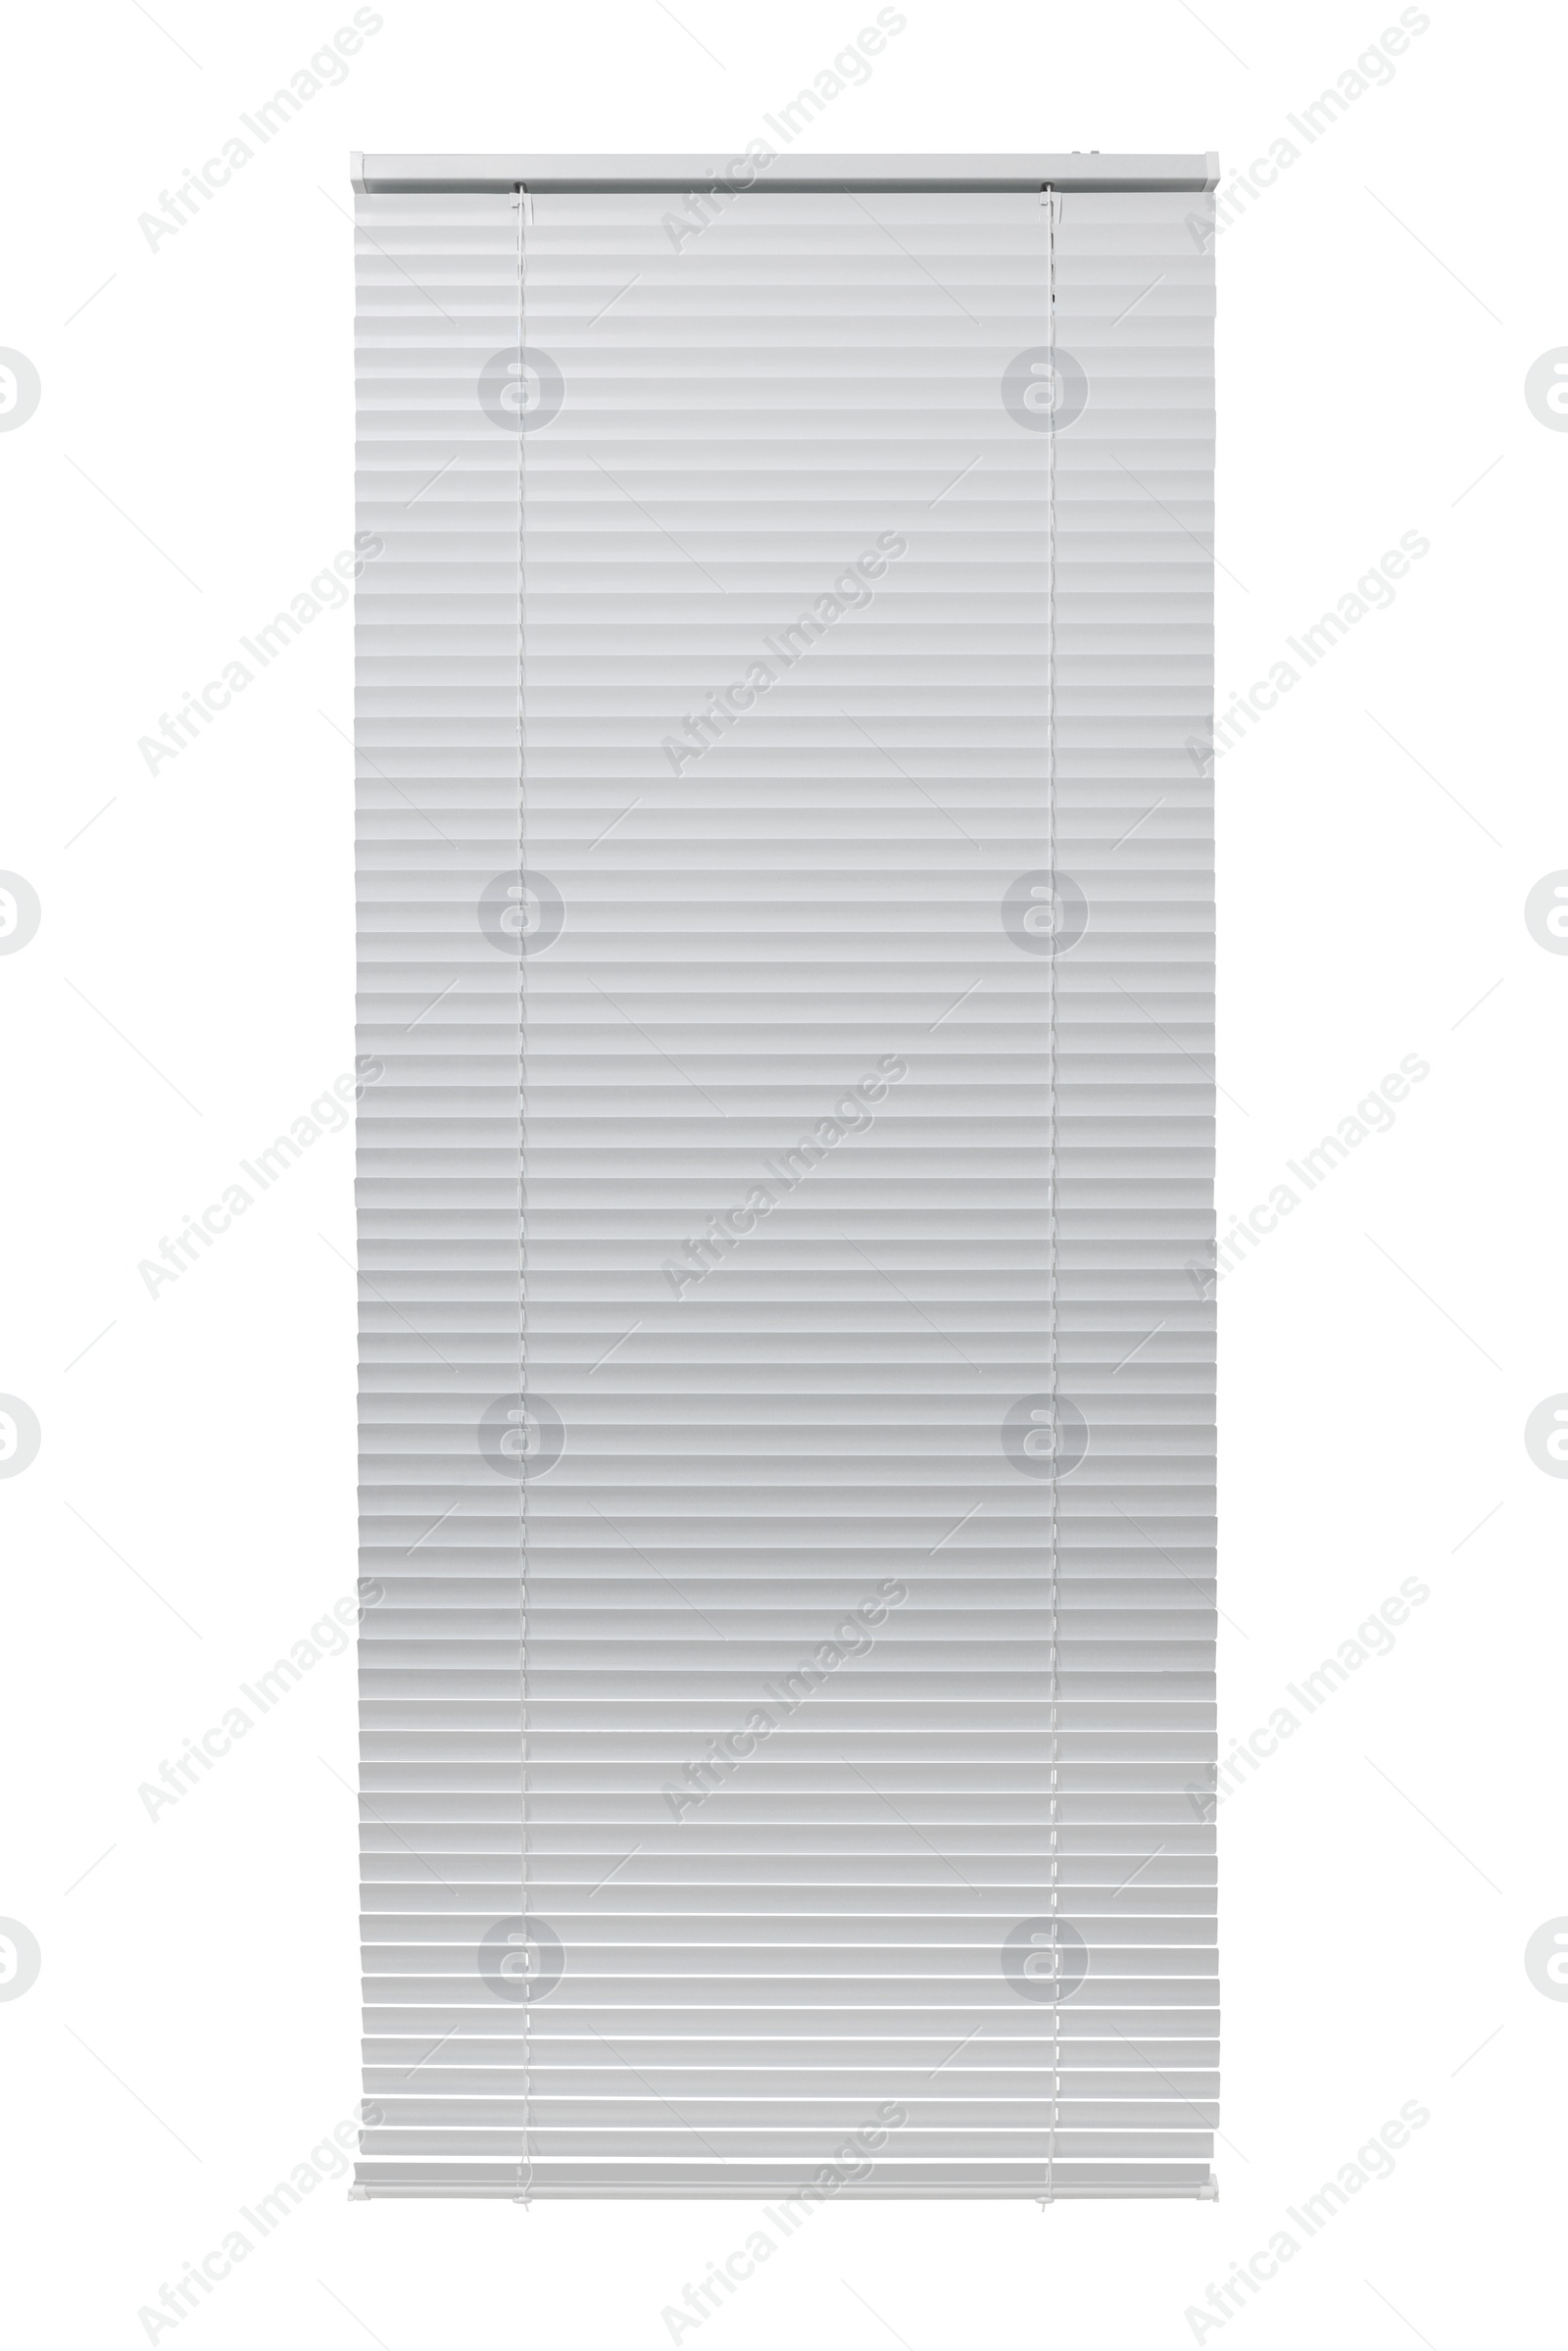 Image of Stylish horizontal window blinds on white background